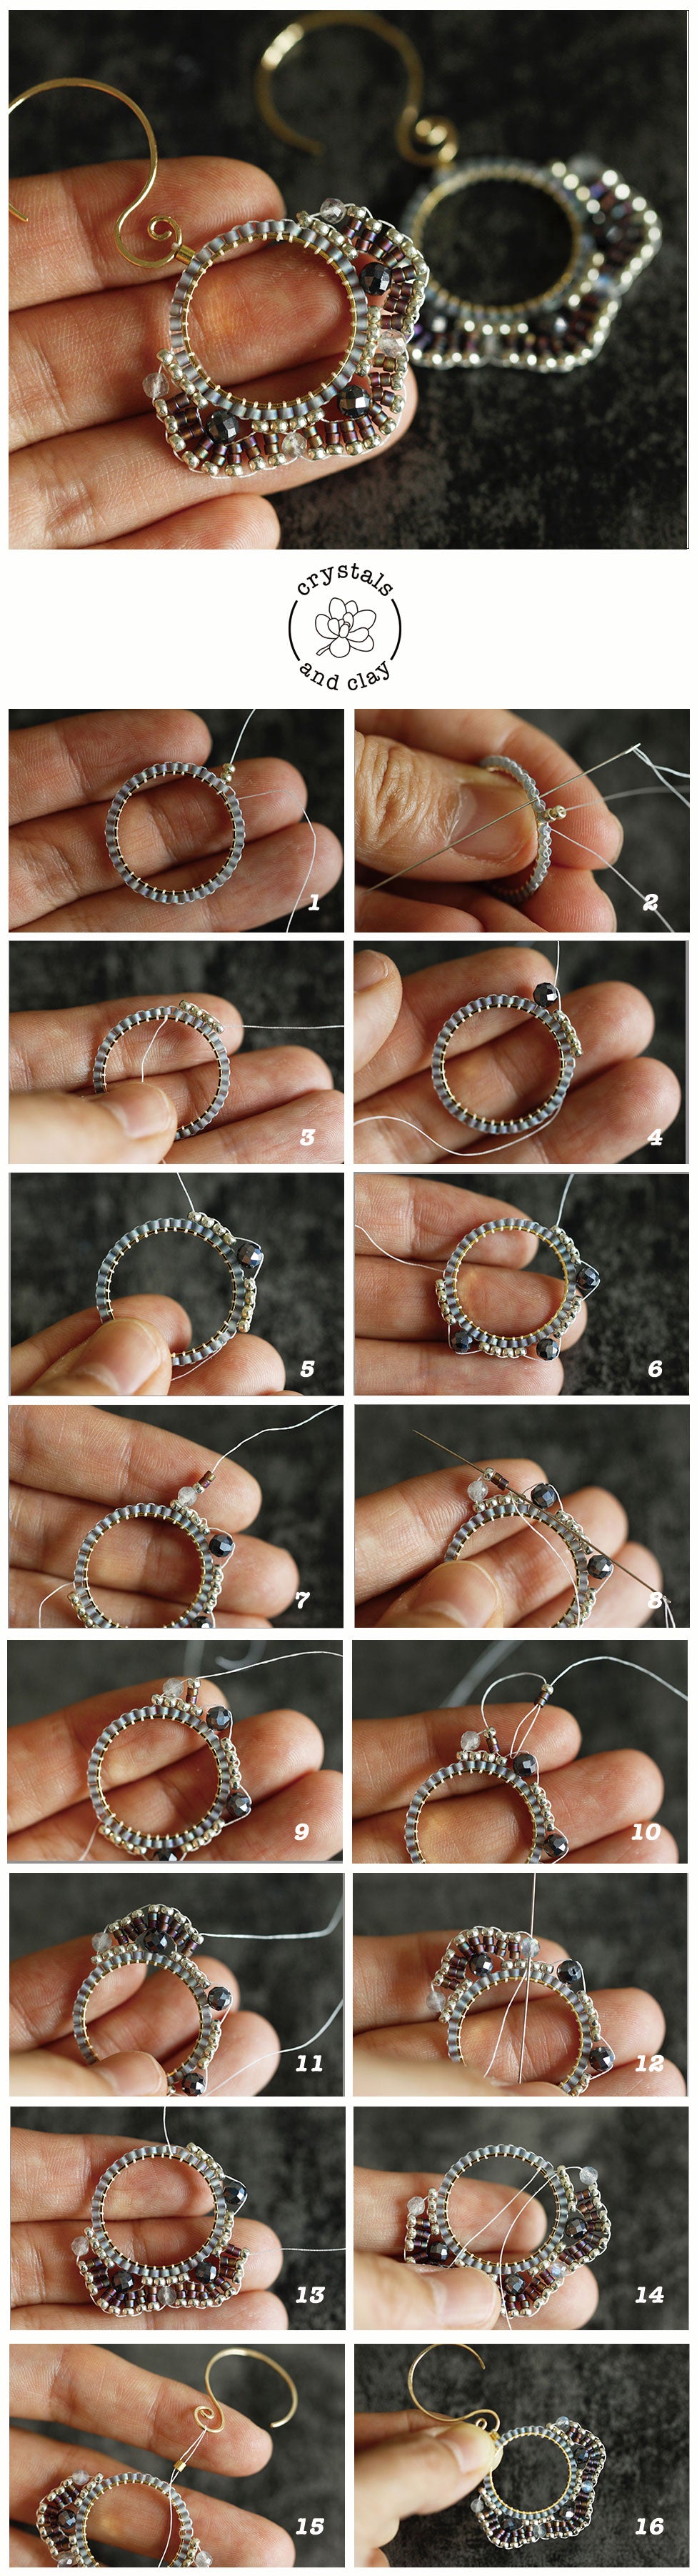 scallop pattern beaded earrings tutorial